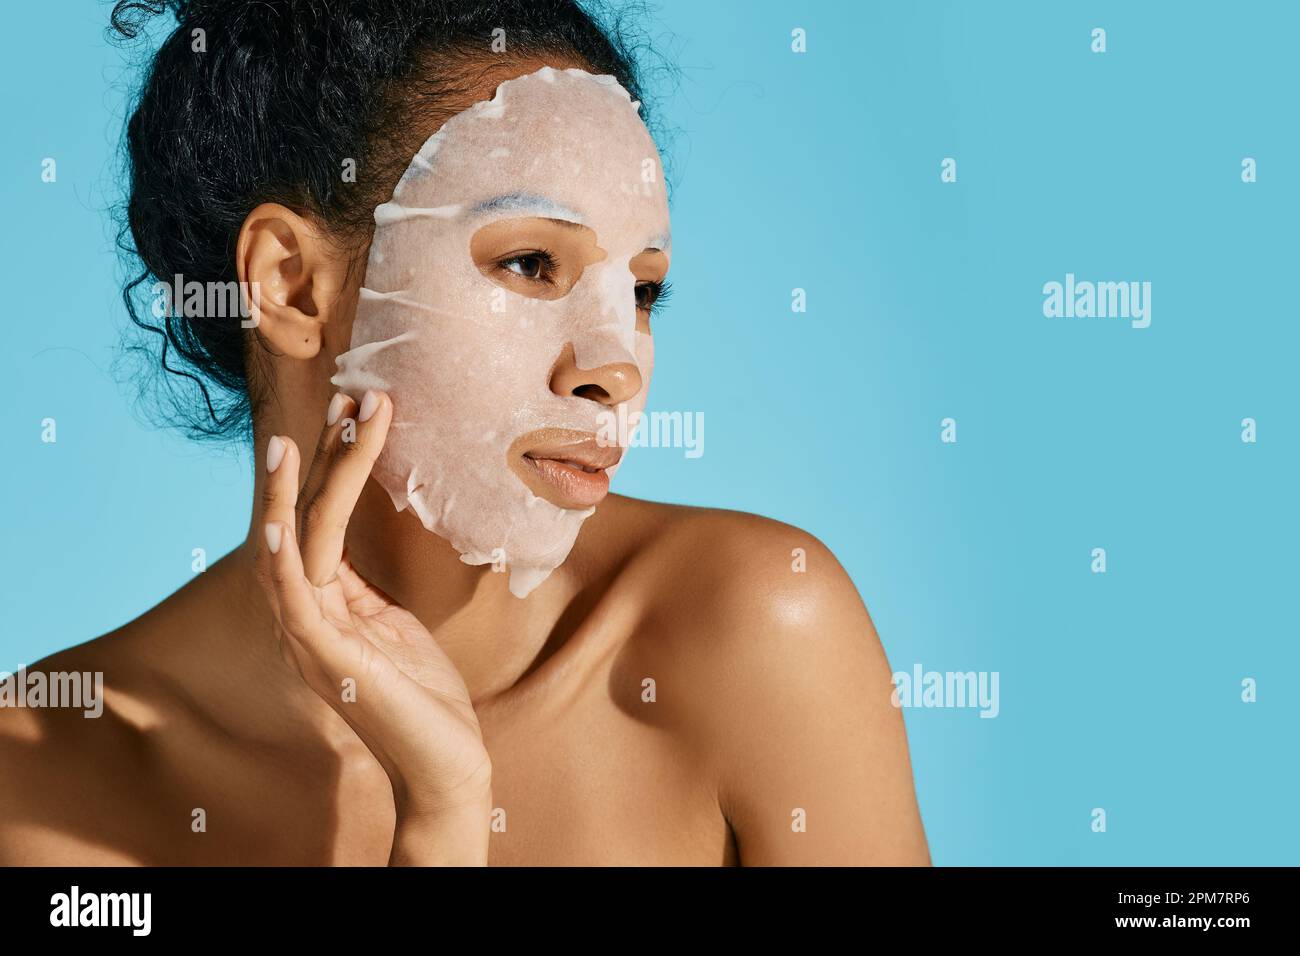 procédé d'hydratation et de rajeunissement du visage. Femme afro-américaine avec masque hydratant de soins de la peau sur fond bleu, de haute qualité Banque D'Images